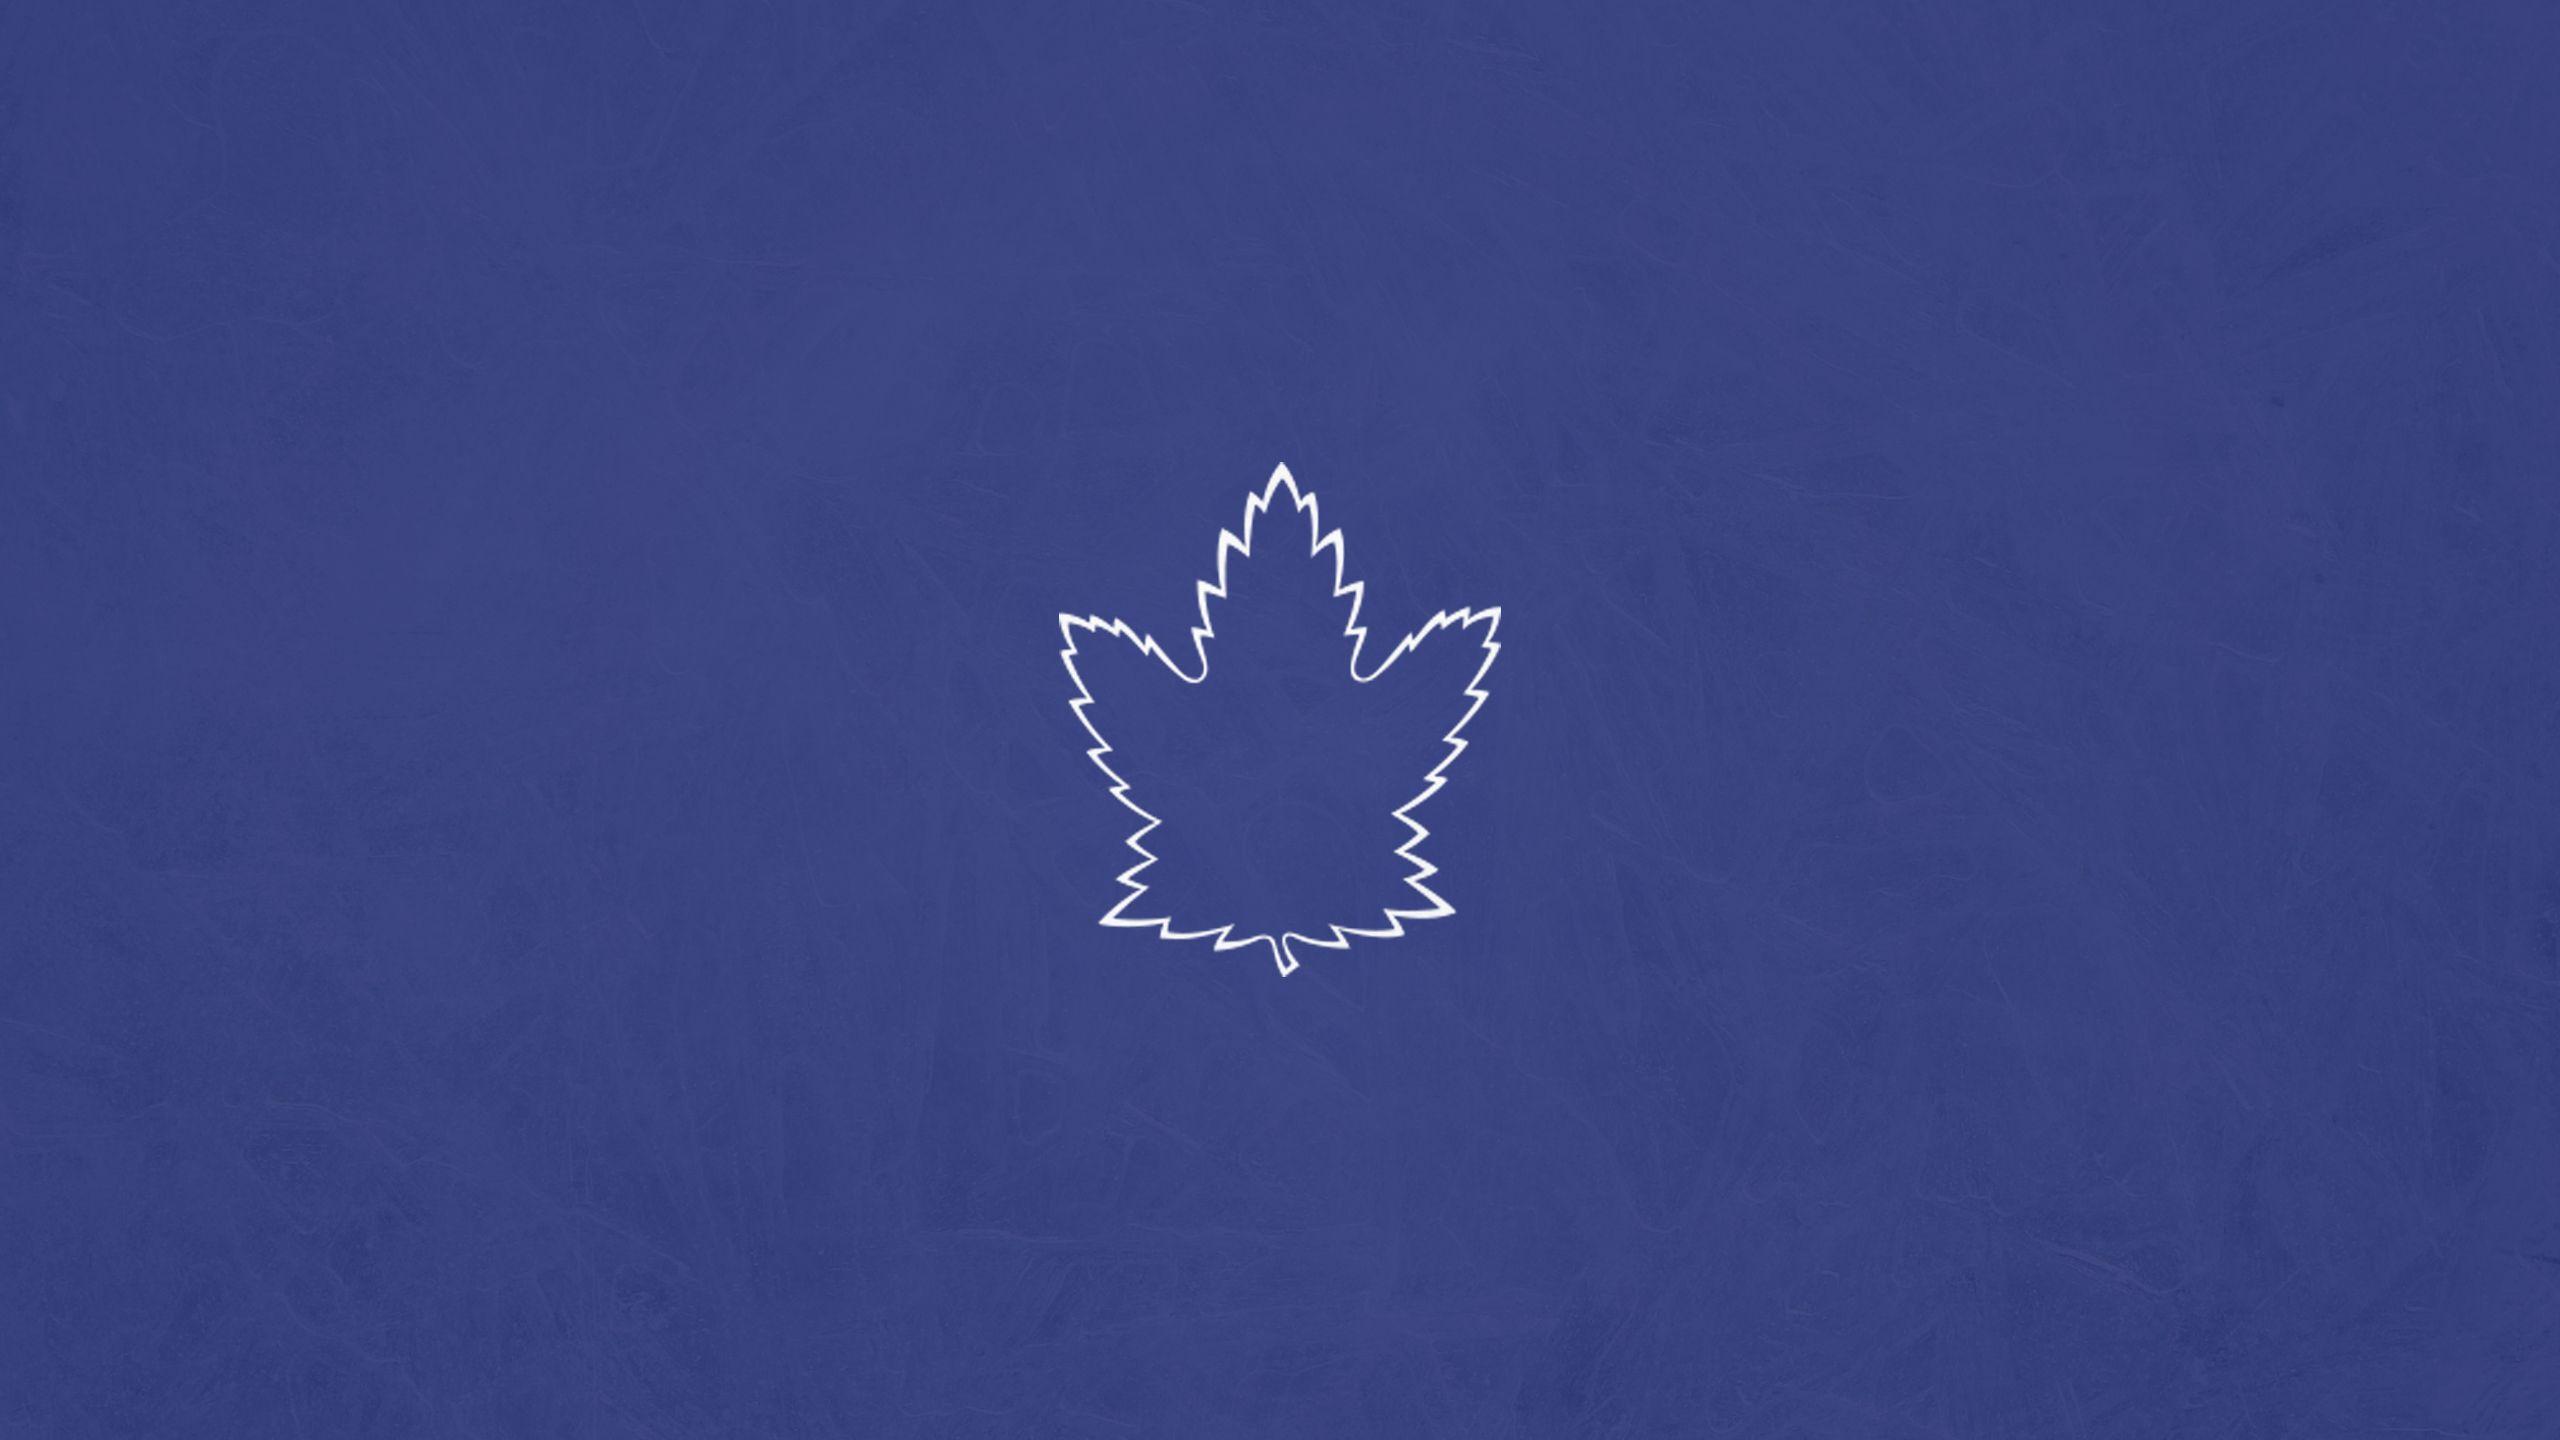 Minimalist Leafs' Wallpaper Courtesy Of U Erockmazz Taken From X